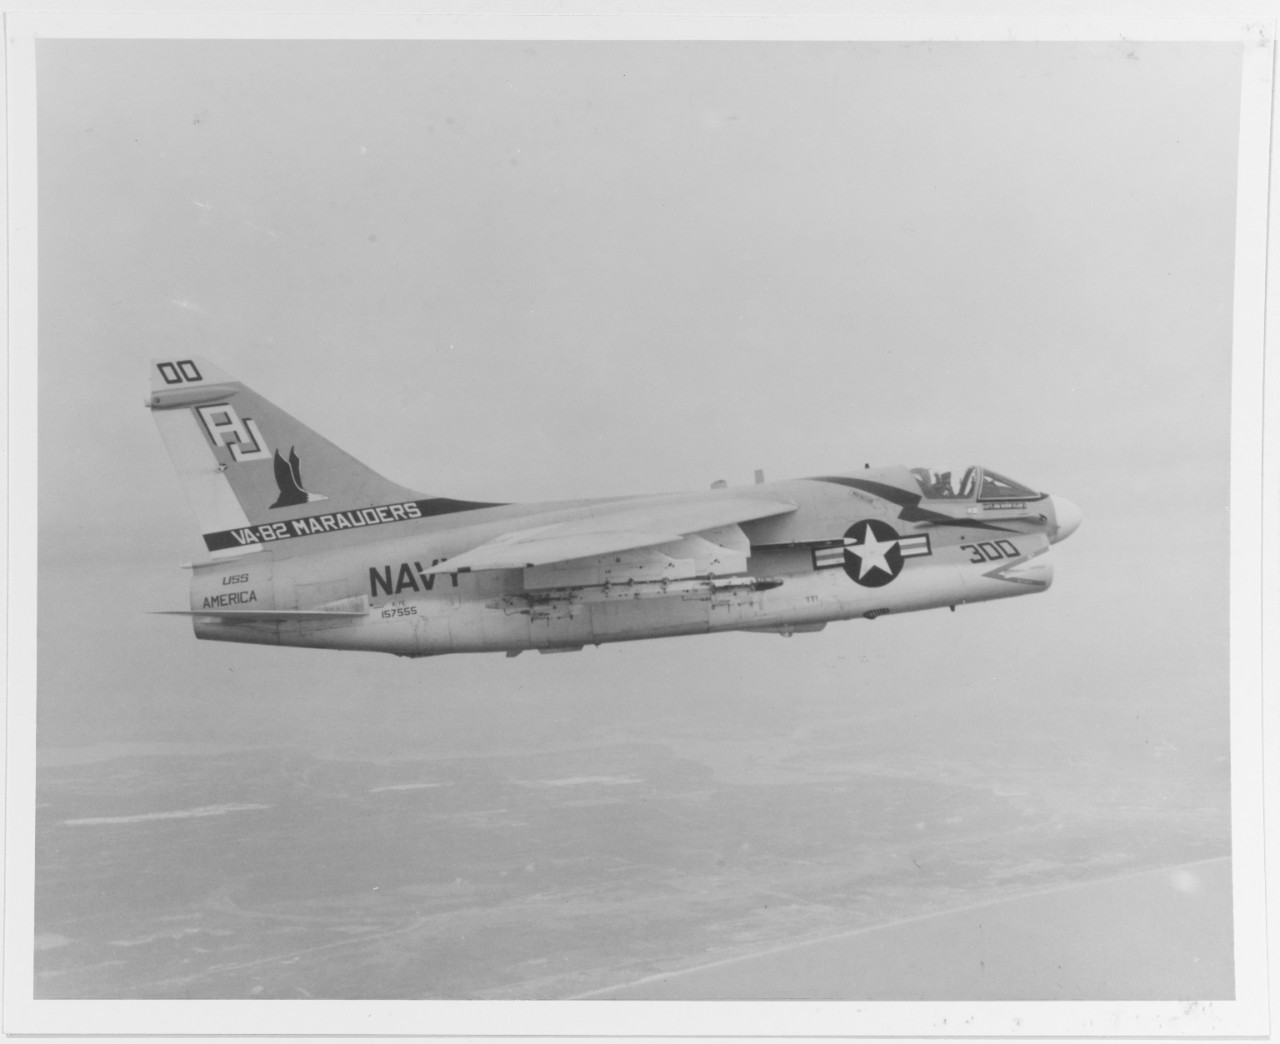 A-7E CORSAIR II